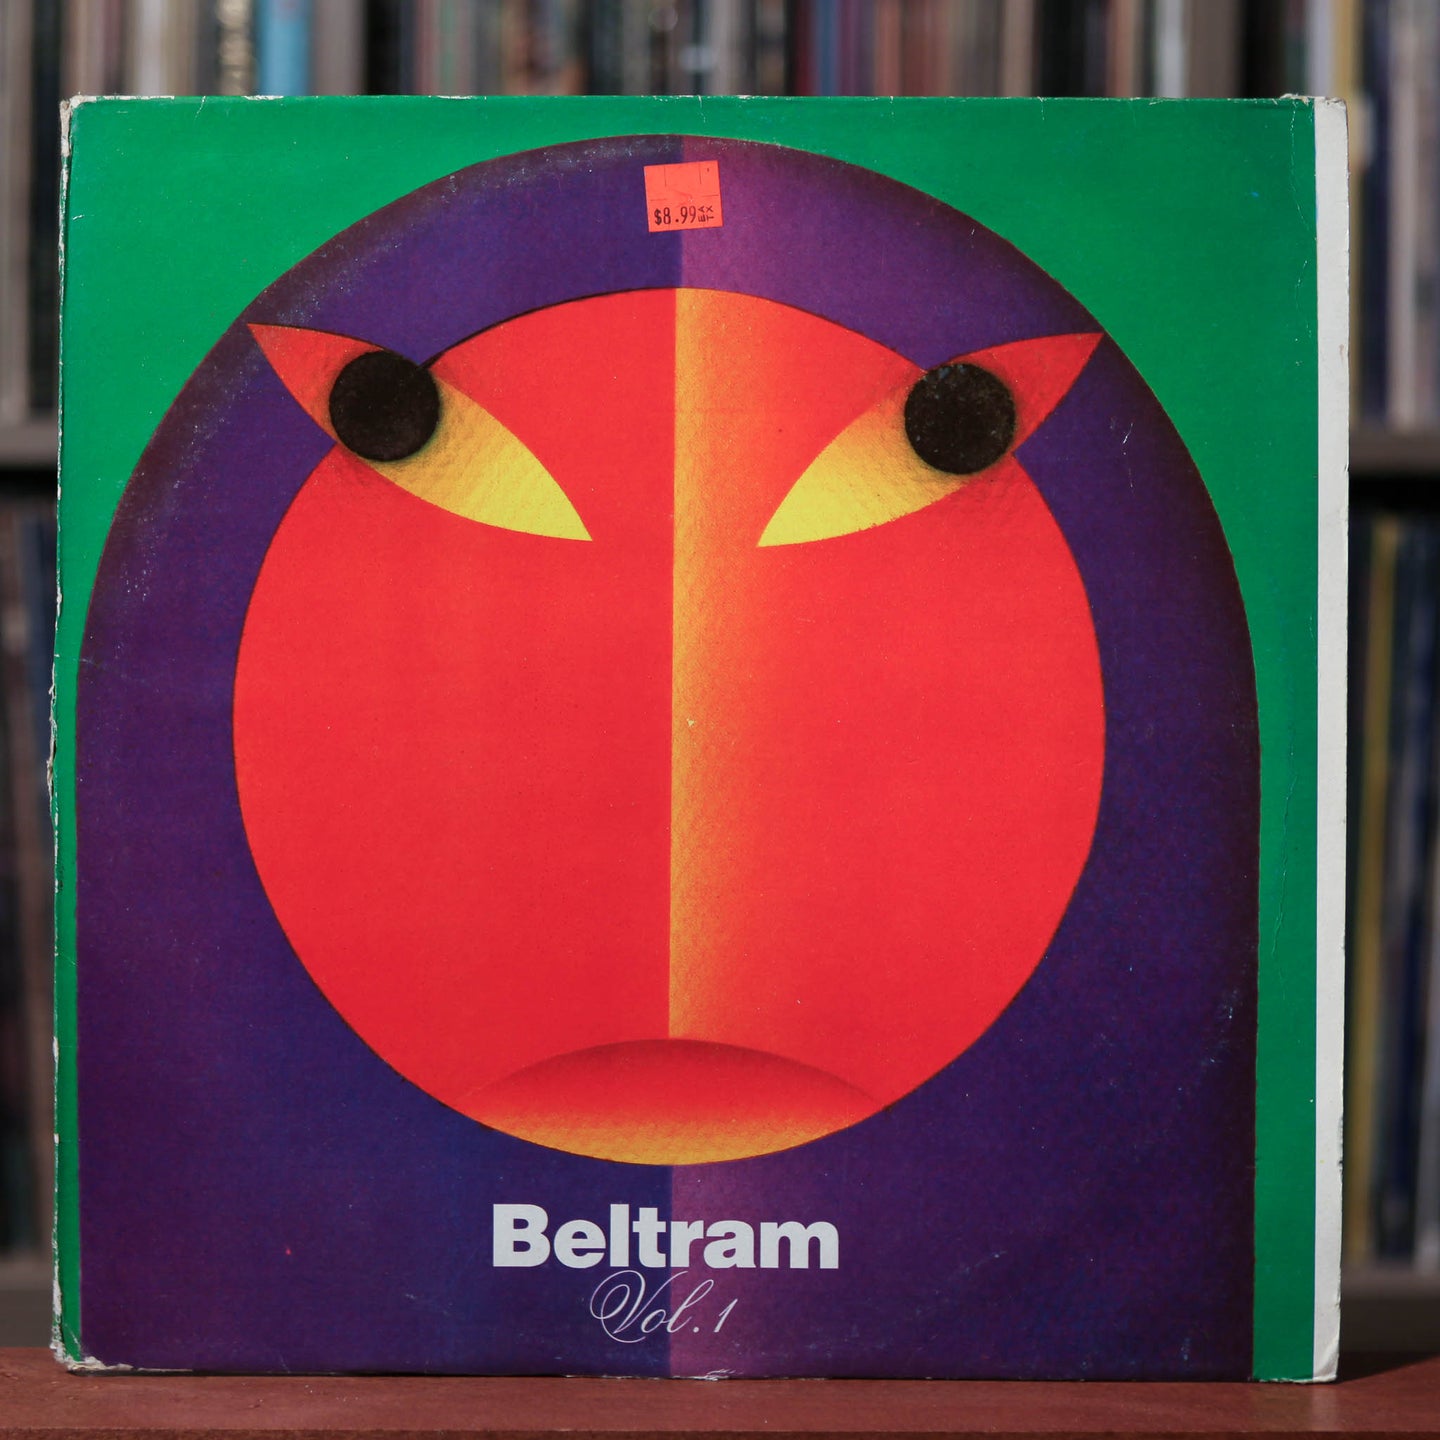 Joey Beltram - Beltram Vol. 1 - 1990 R&S